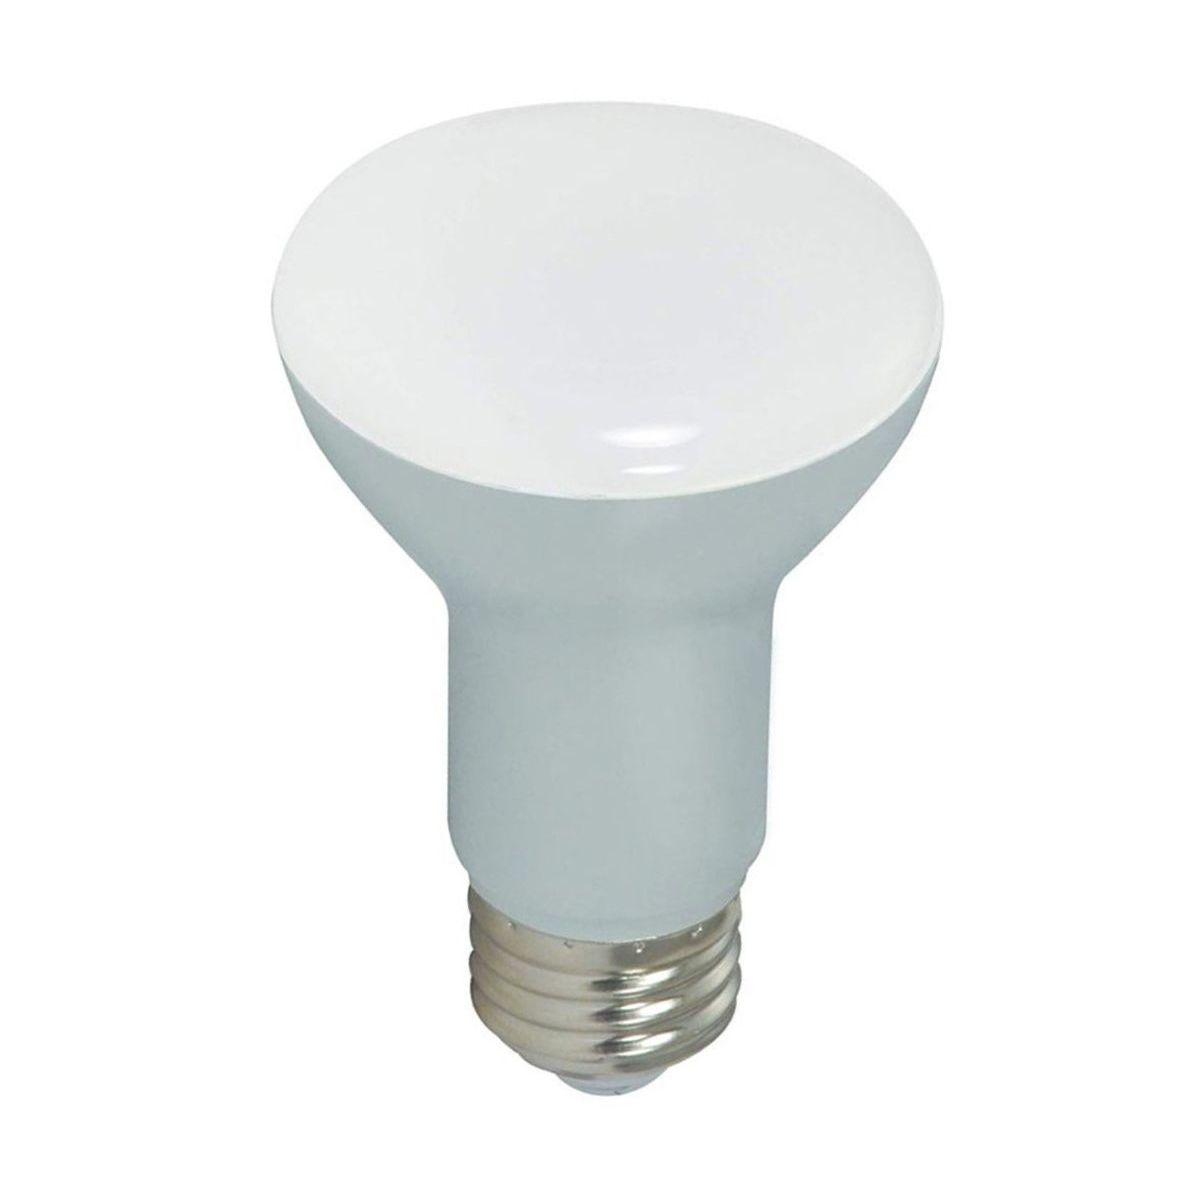 LED R20/BR20 Reflector bulb, 7 watt, 525 Lumens, 4000K, E26 Medium Base, 107 Deg. Flood, Dimmable - Bees Lighting